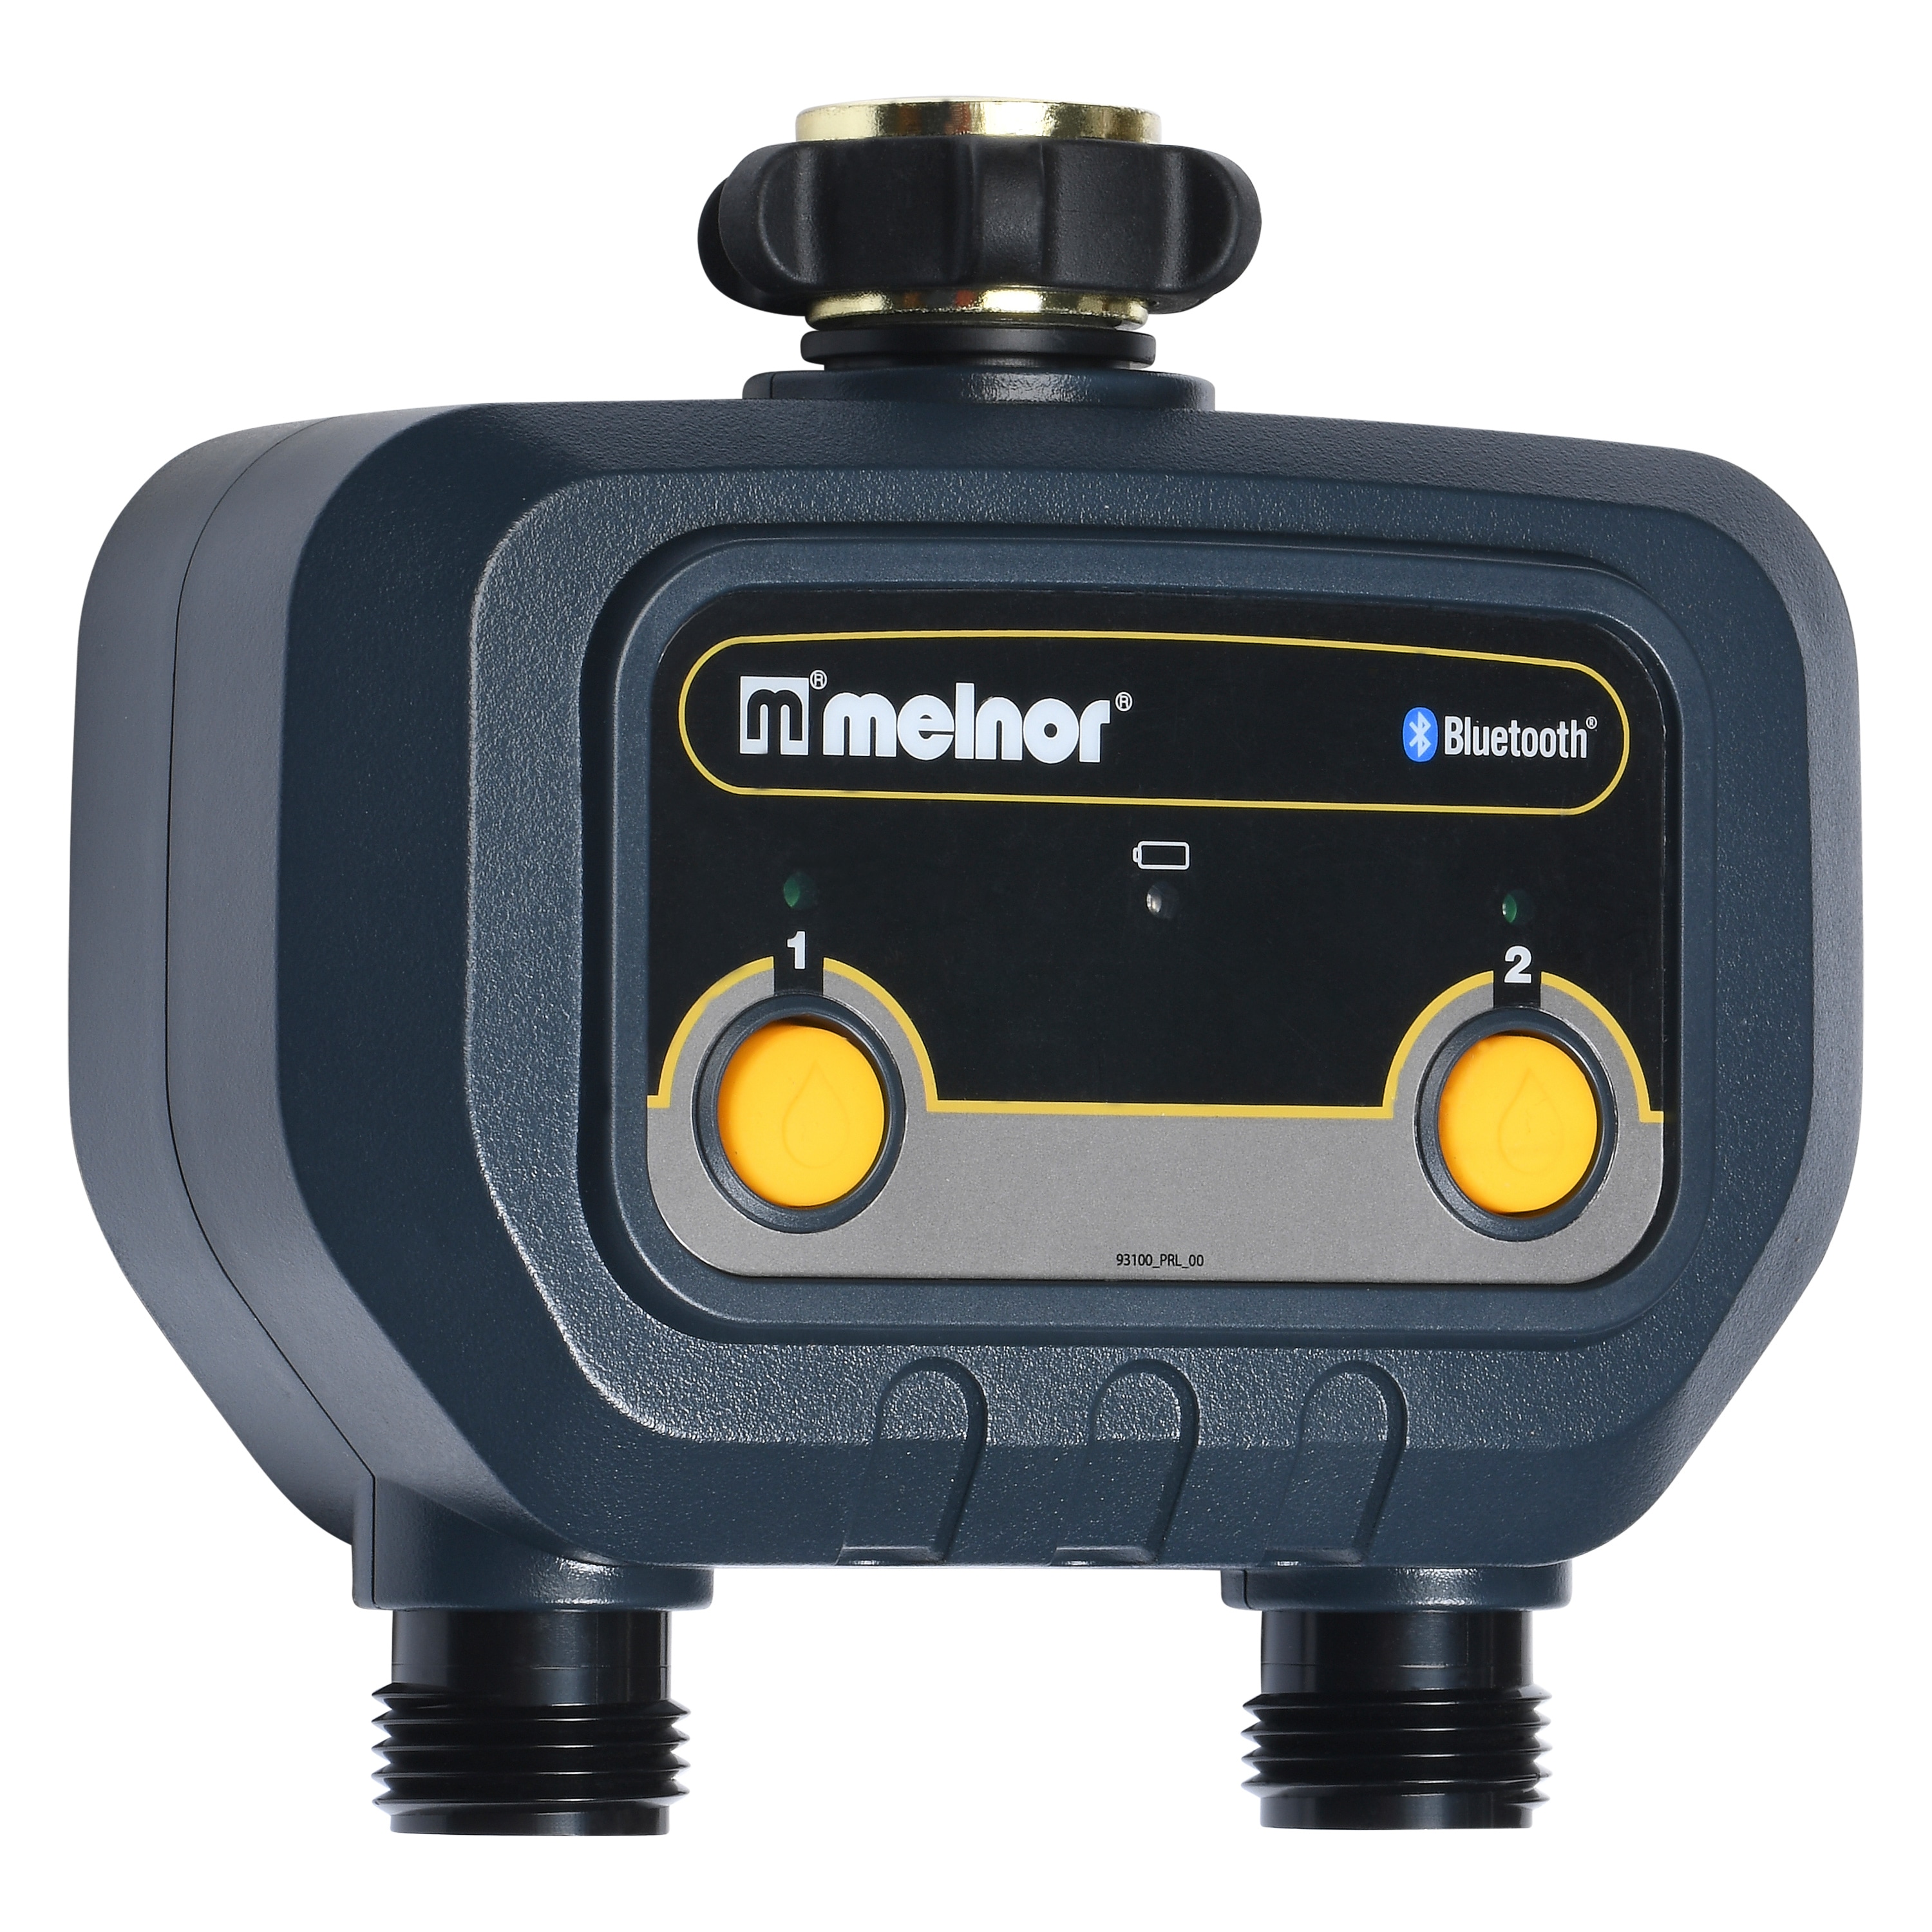 Melnor Flowmeter Automatic Water Shut-off Timer